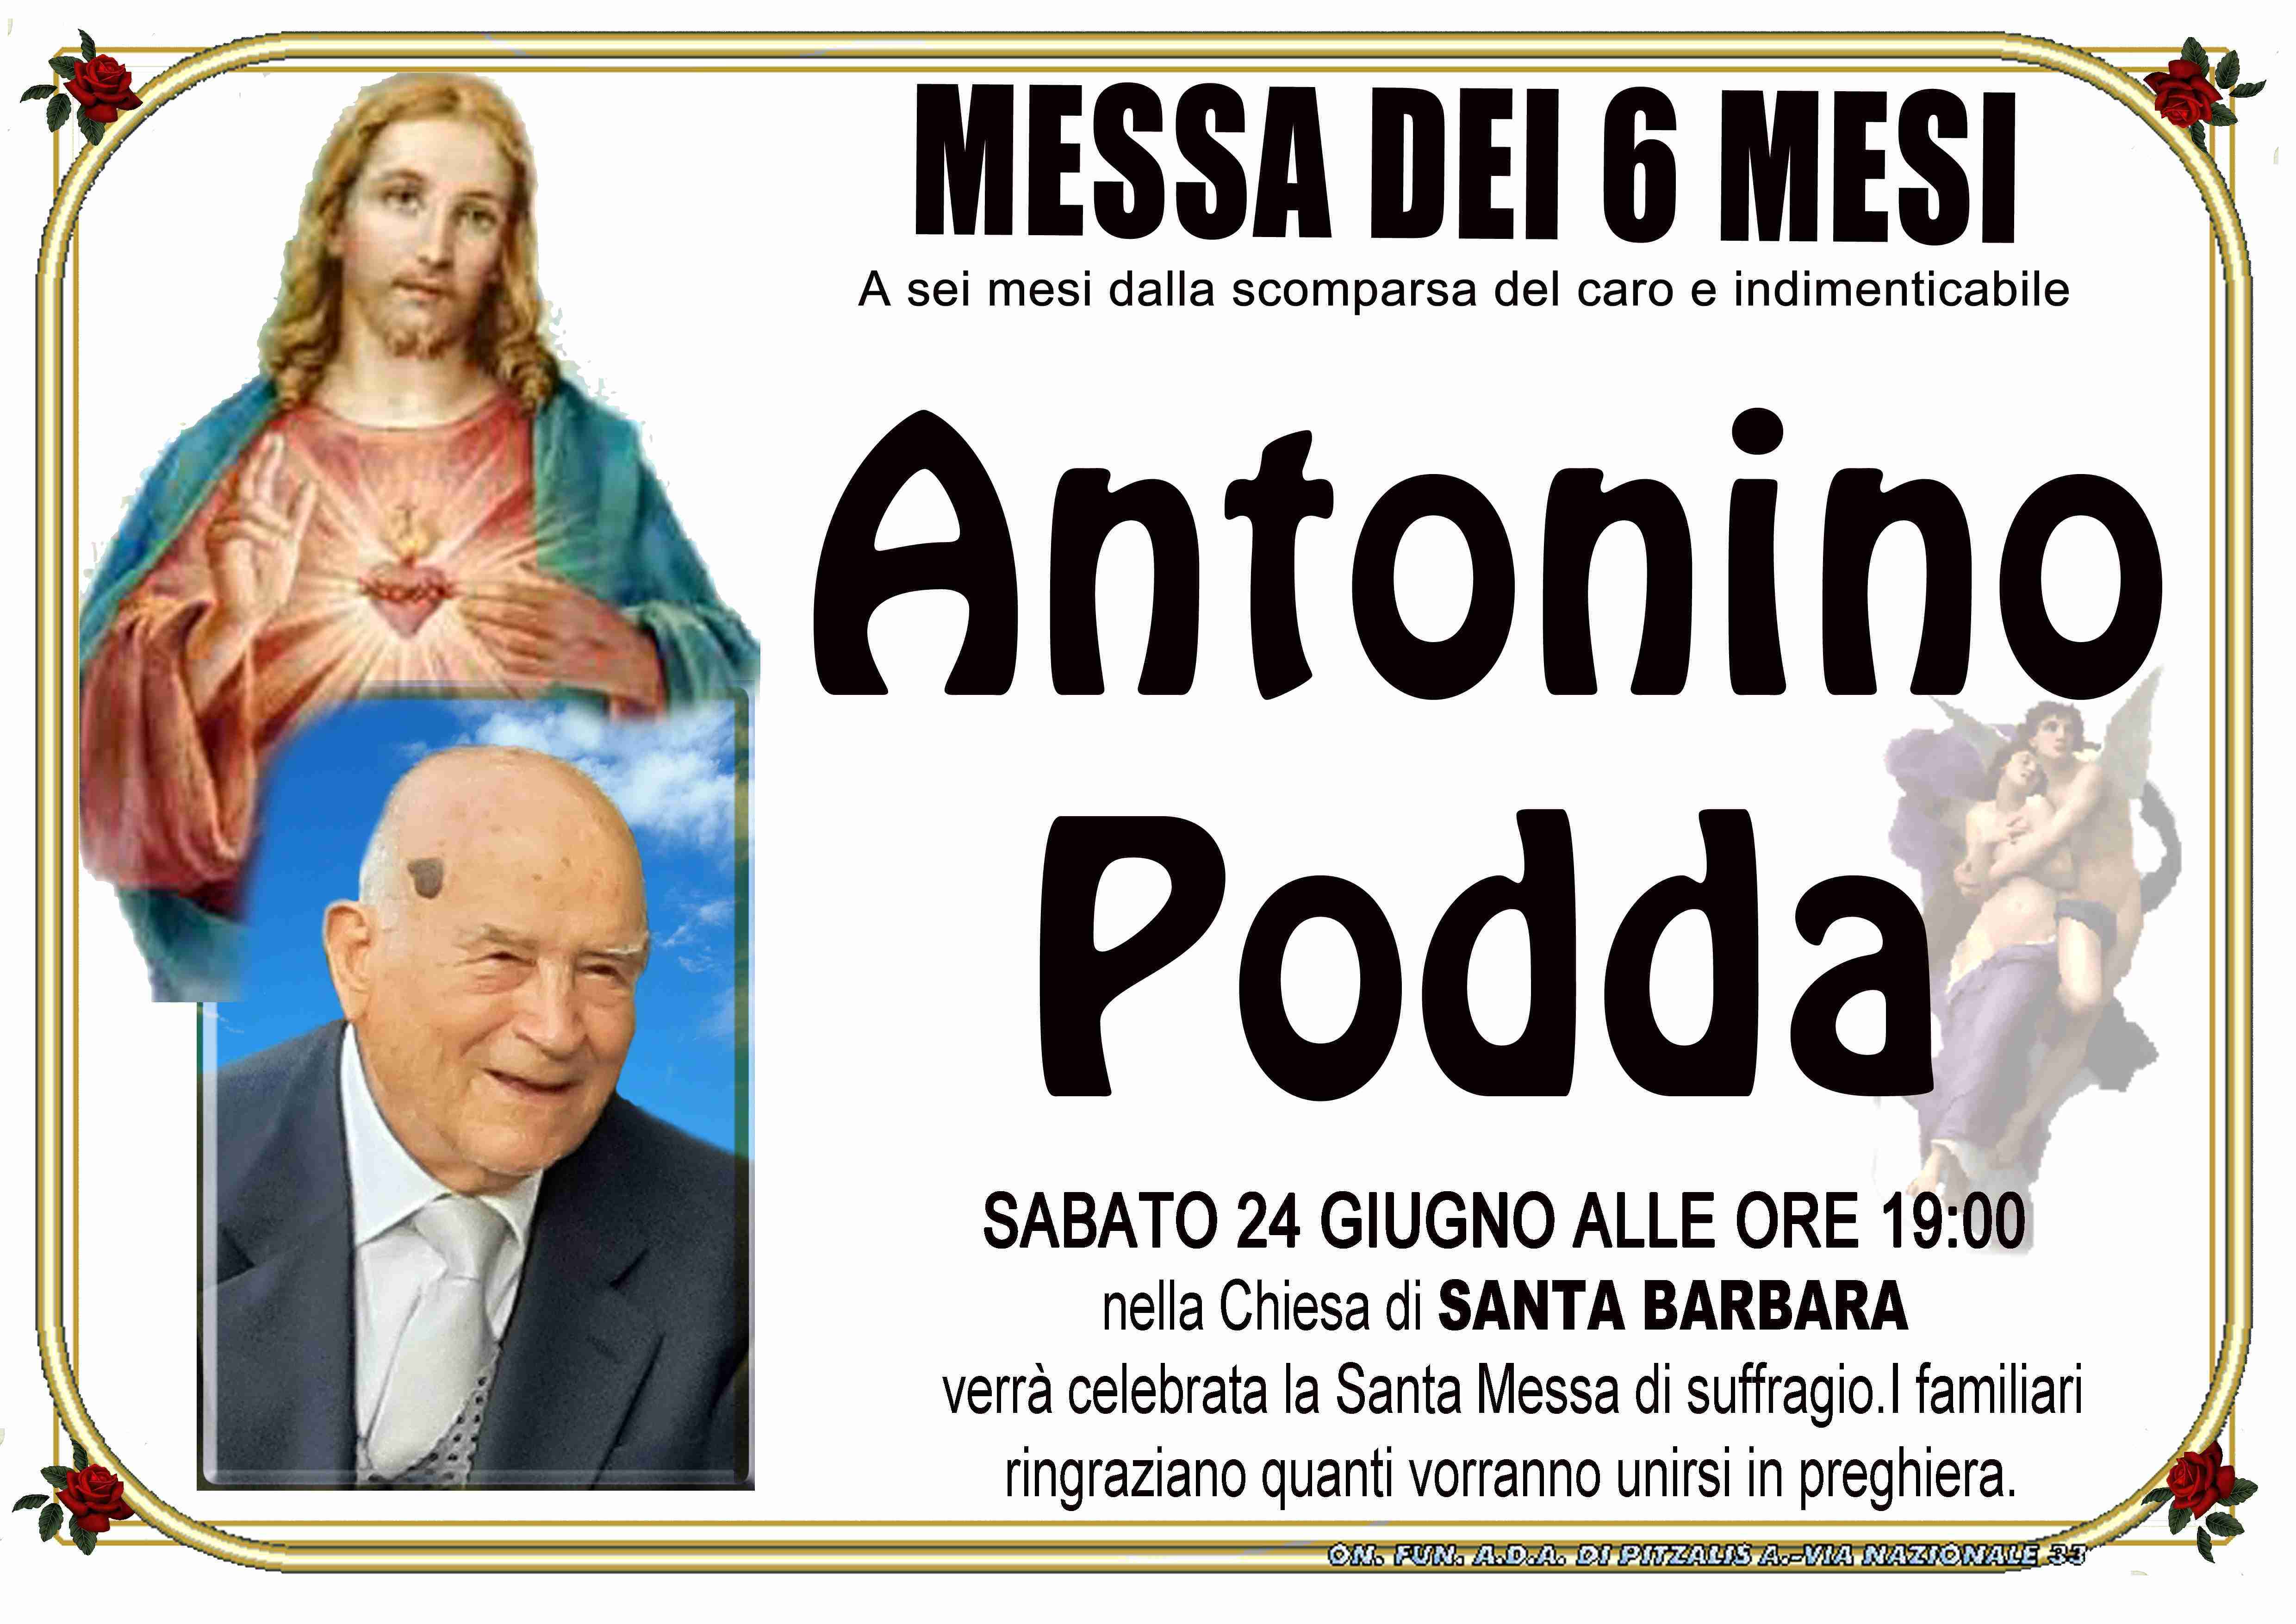 Antonino Podda